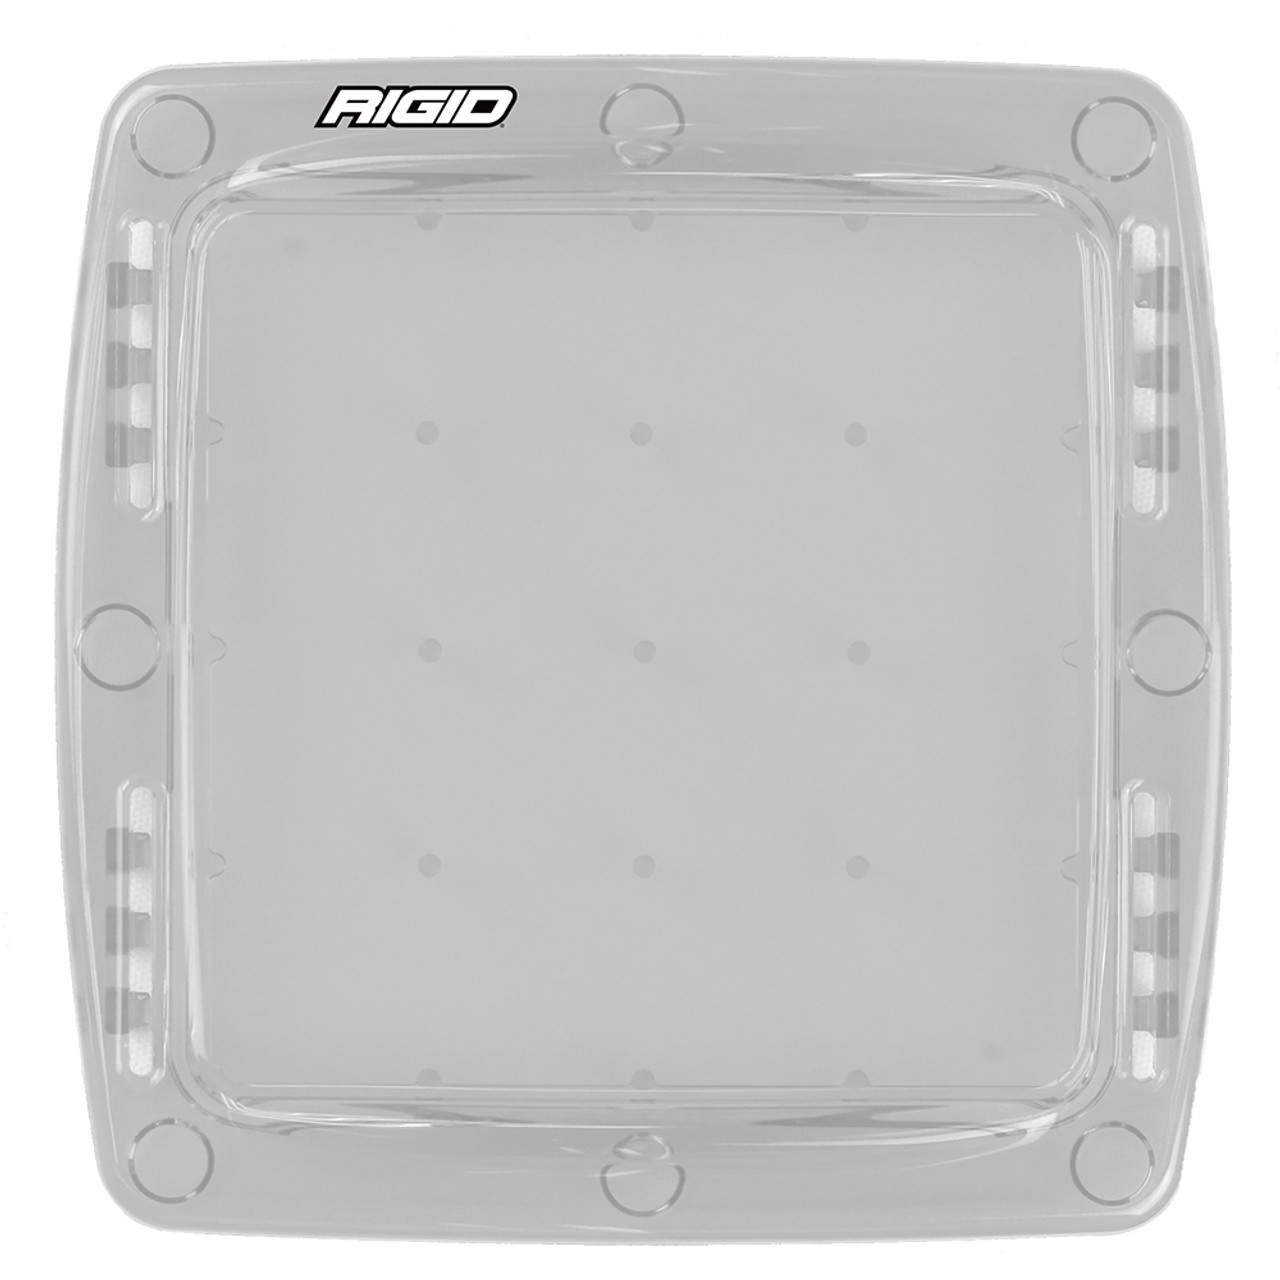 RIGID Industries - Q-Series Lens Cover - Polycarbonate Plastic - Apollo Lighting